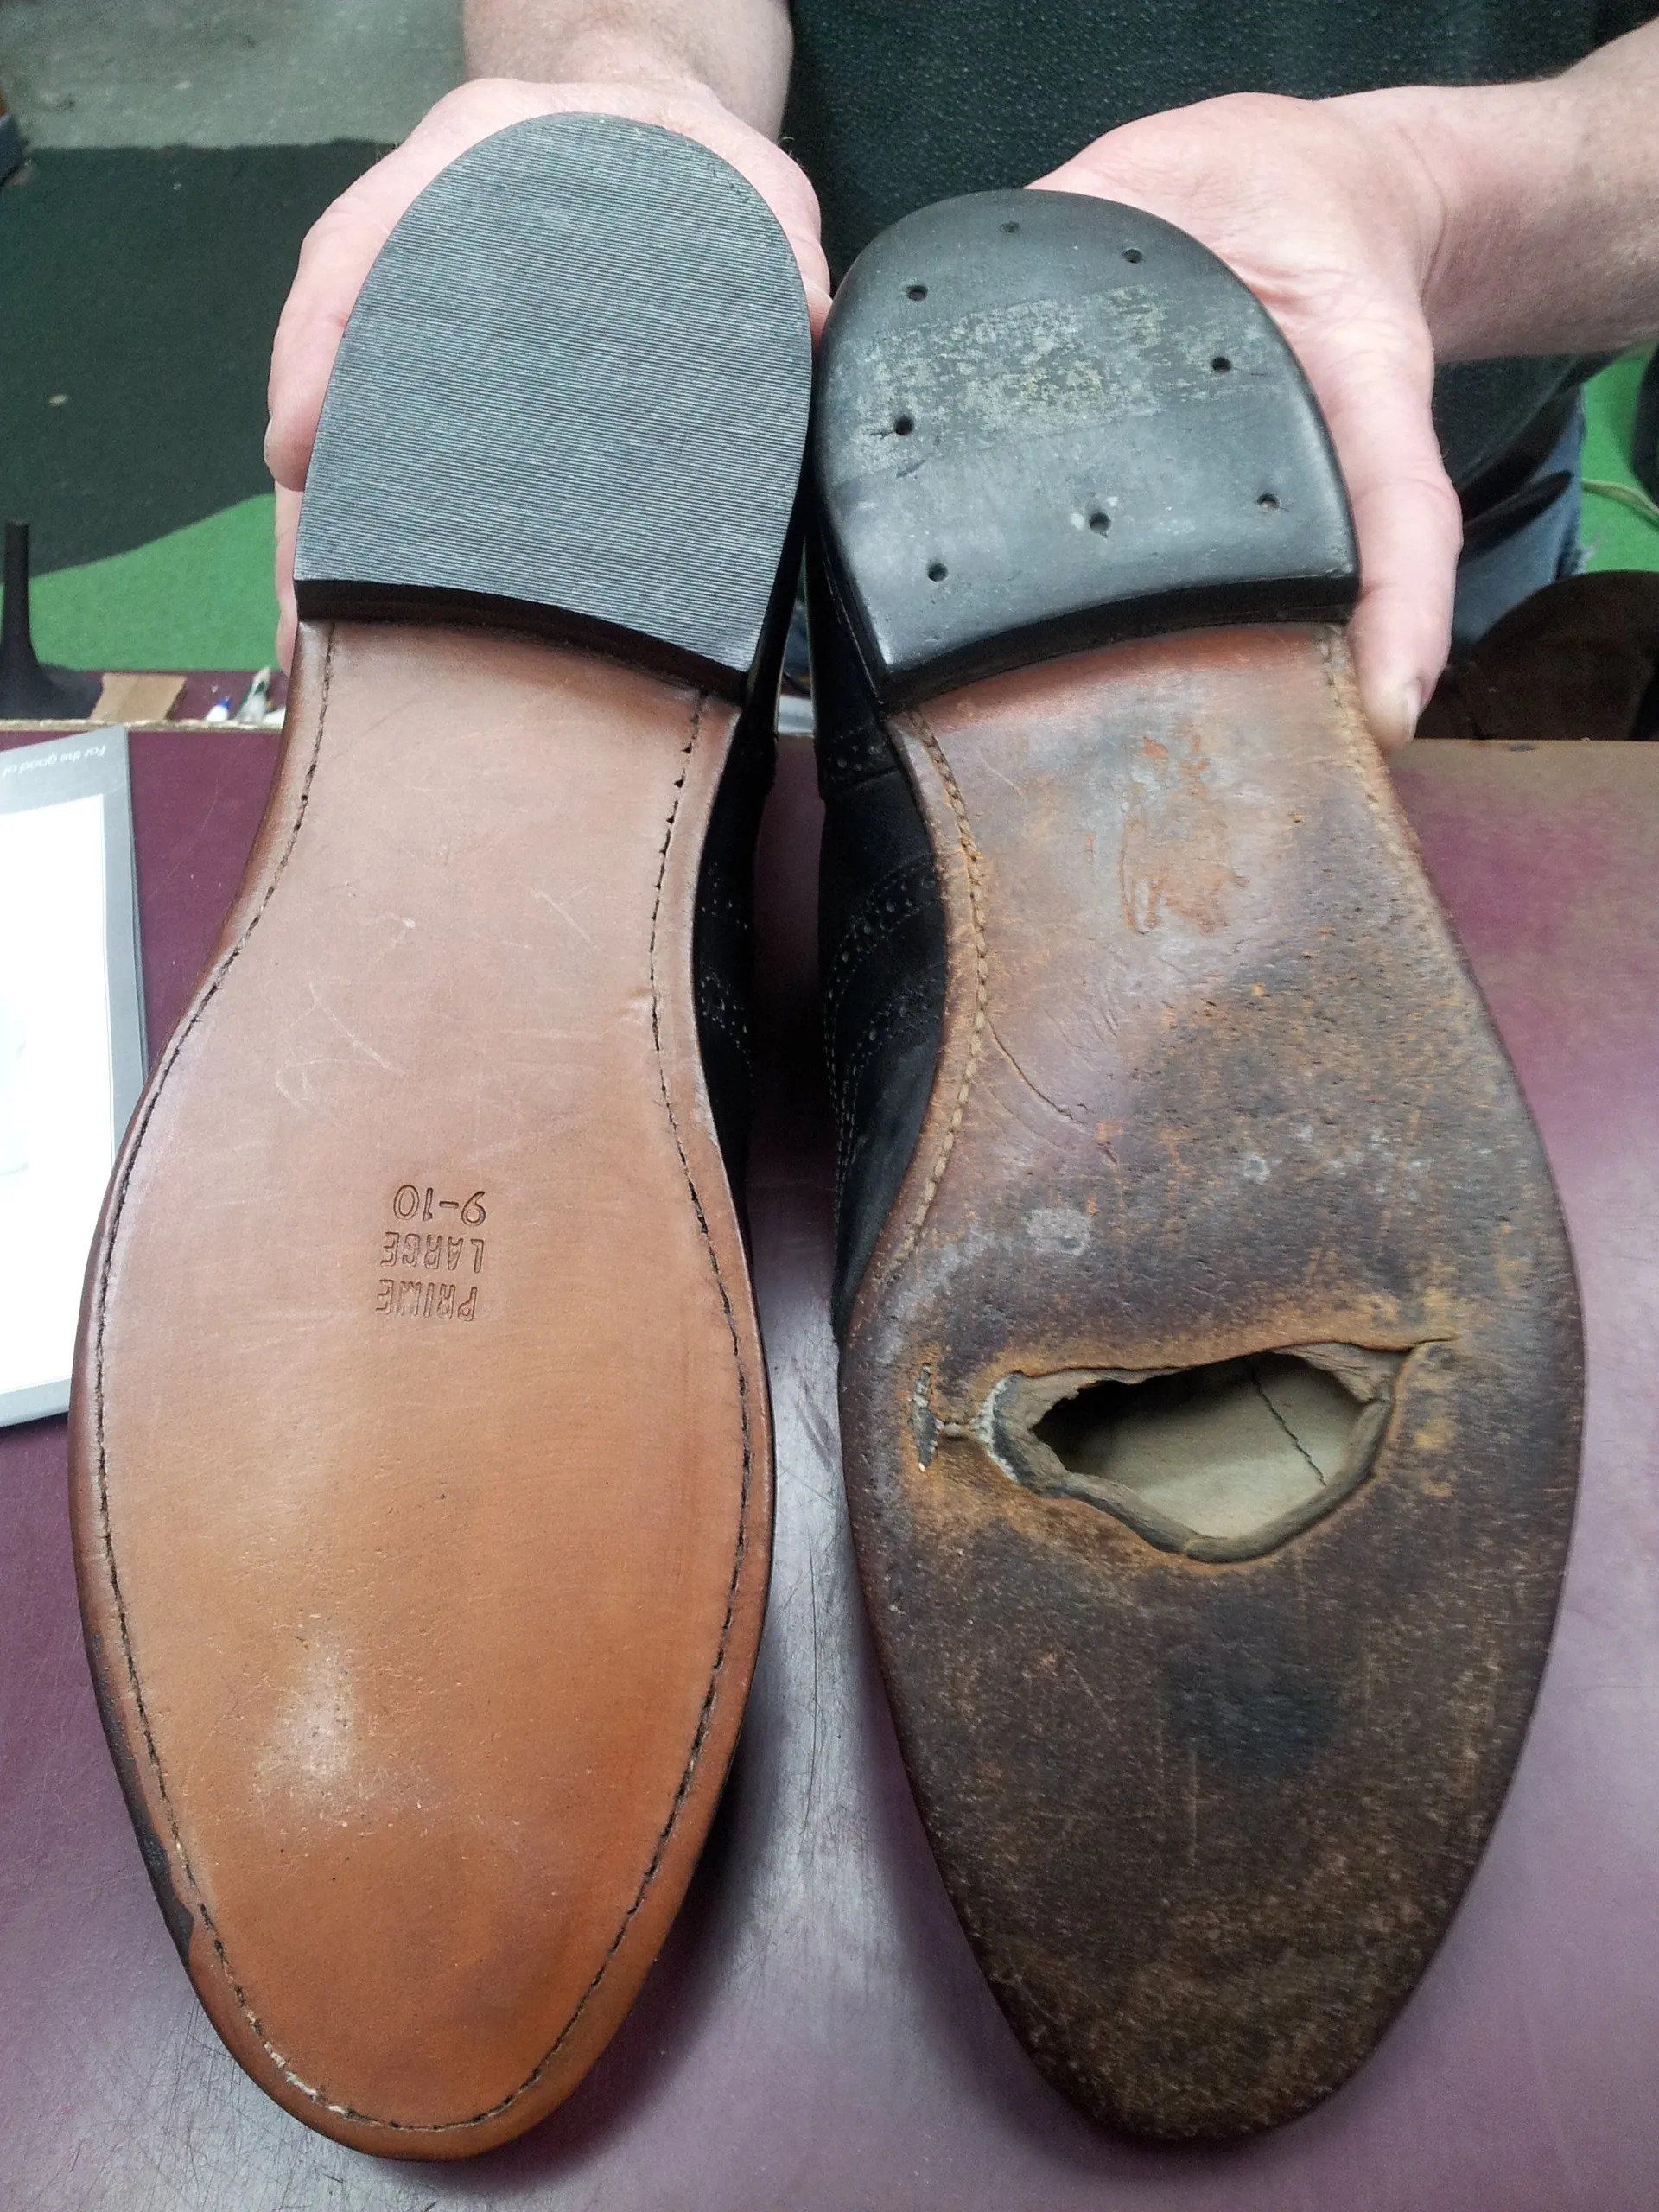 Purse Repair | St. Louis, MO | Cobblestone Quality Shoe Repair